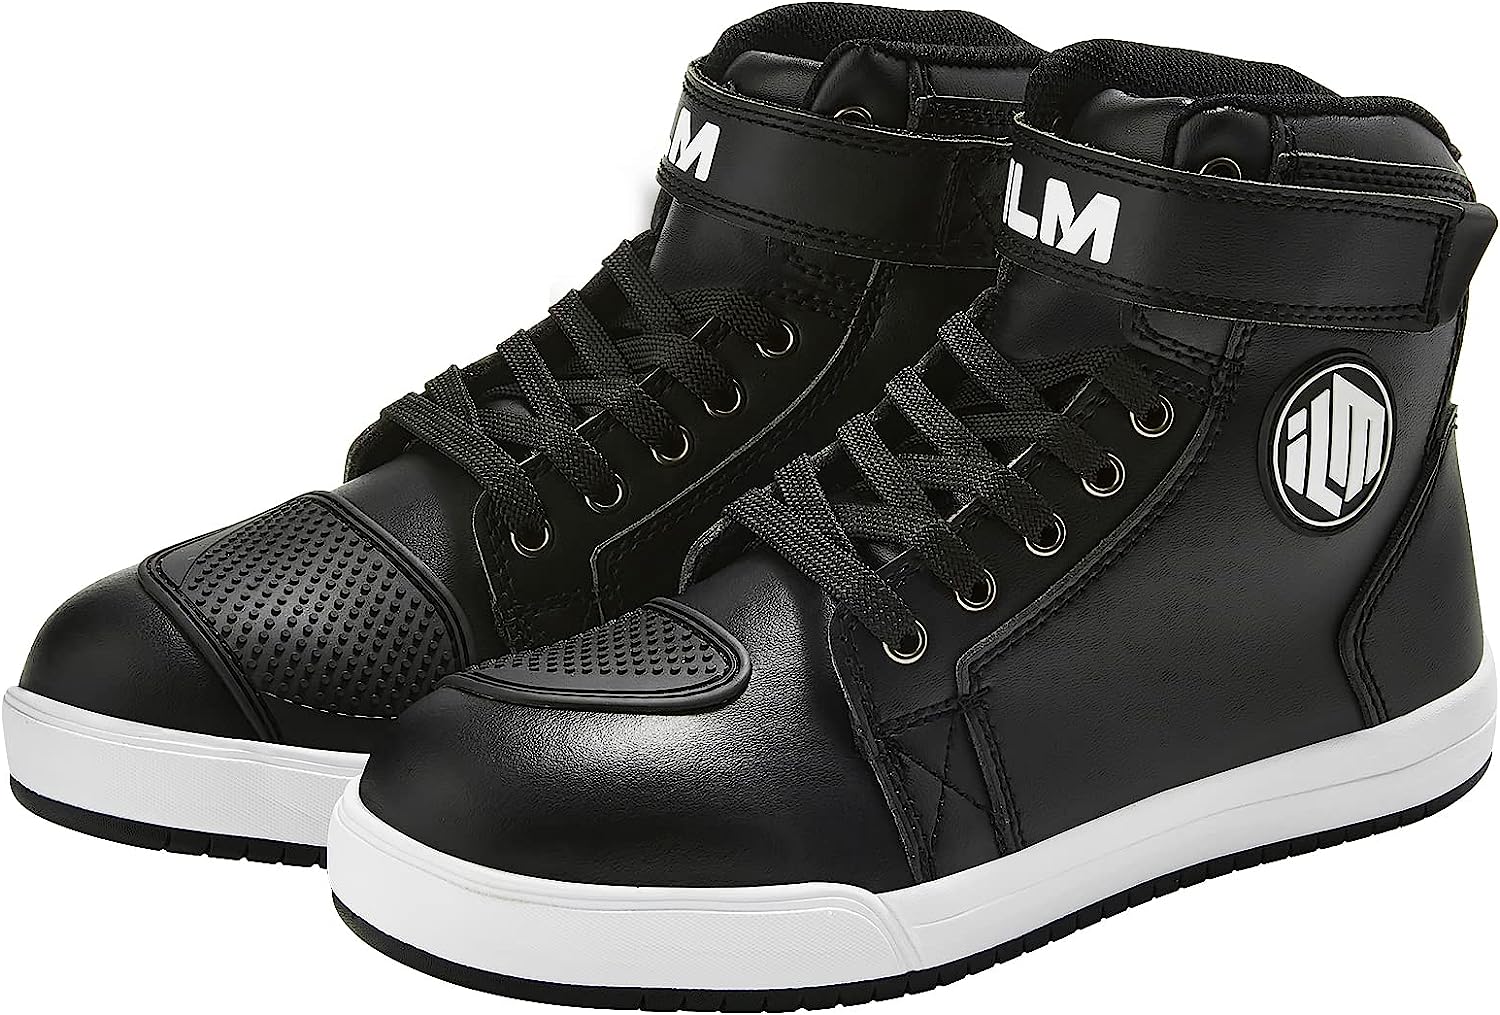 ILM Motorcycle Shoes for Men Black Waterproof Street [...]